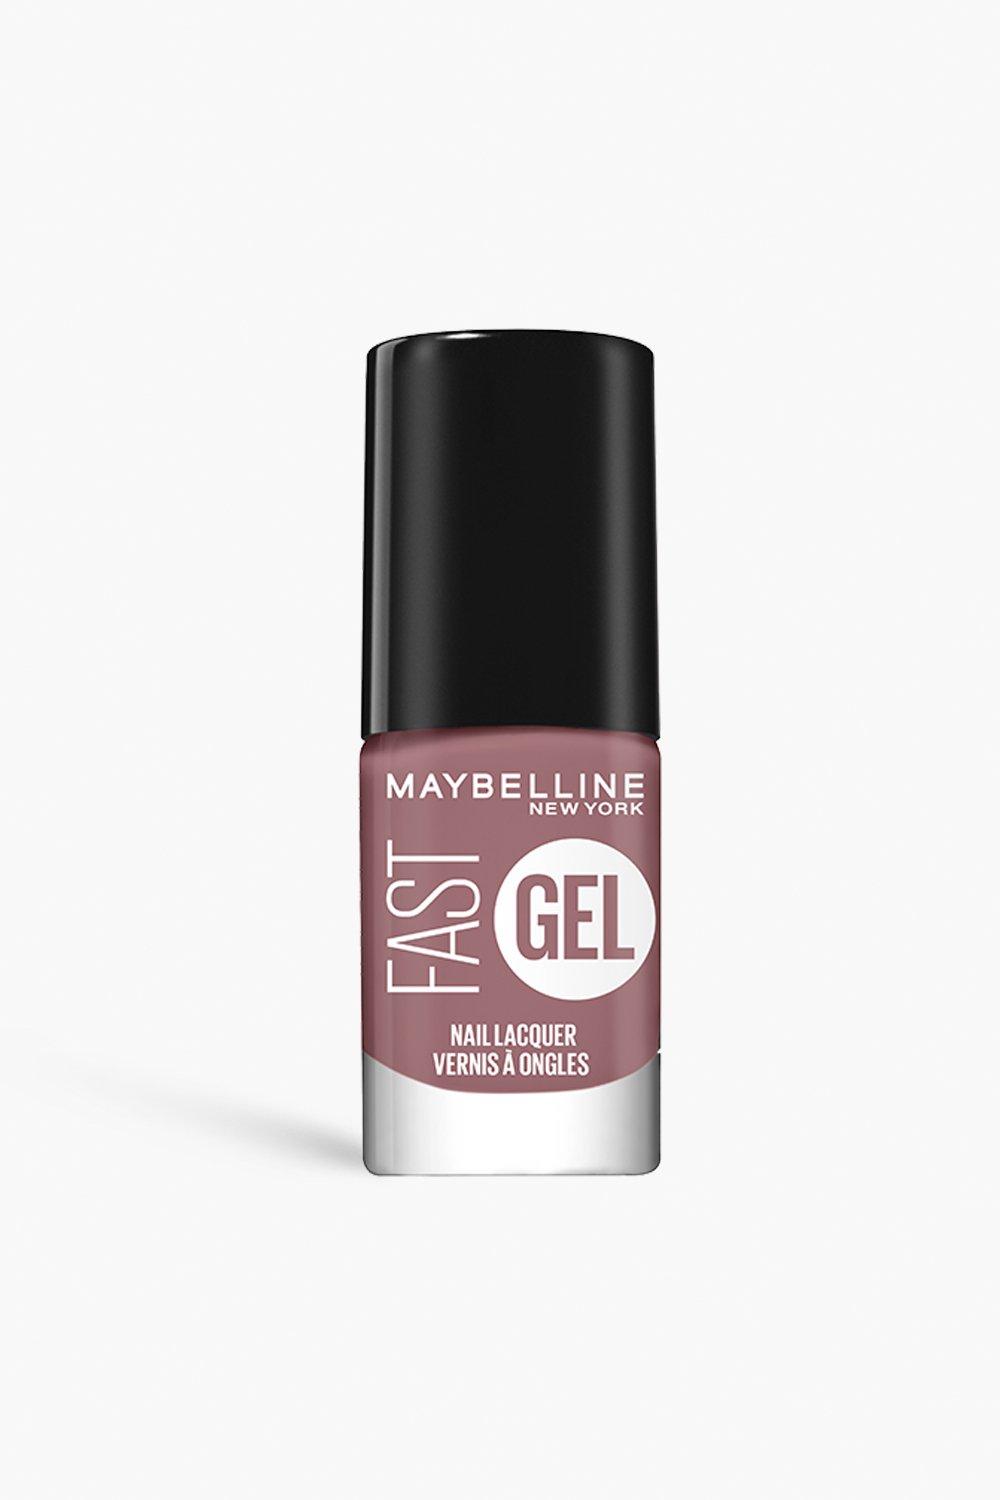 Maybelline Fast Gel Nail Lacquer Long-Lasting Nail Polish, Blush